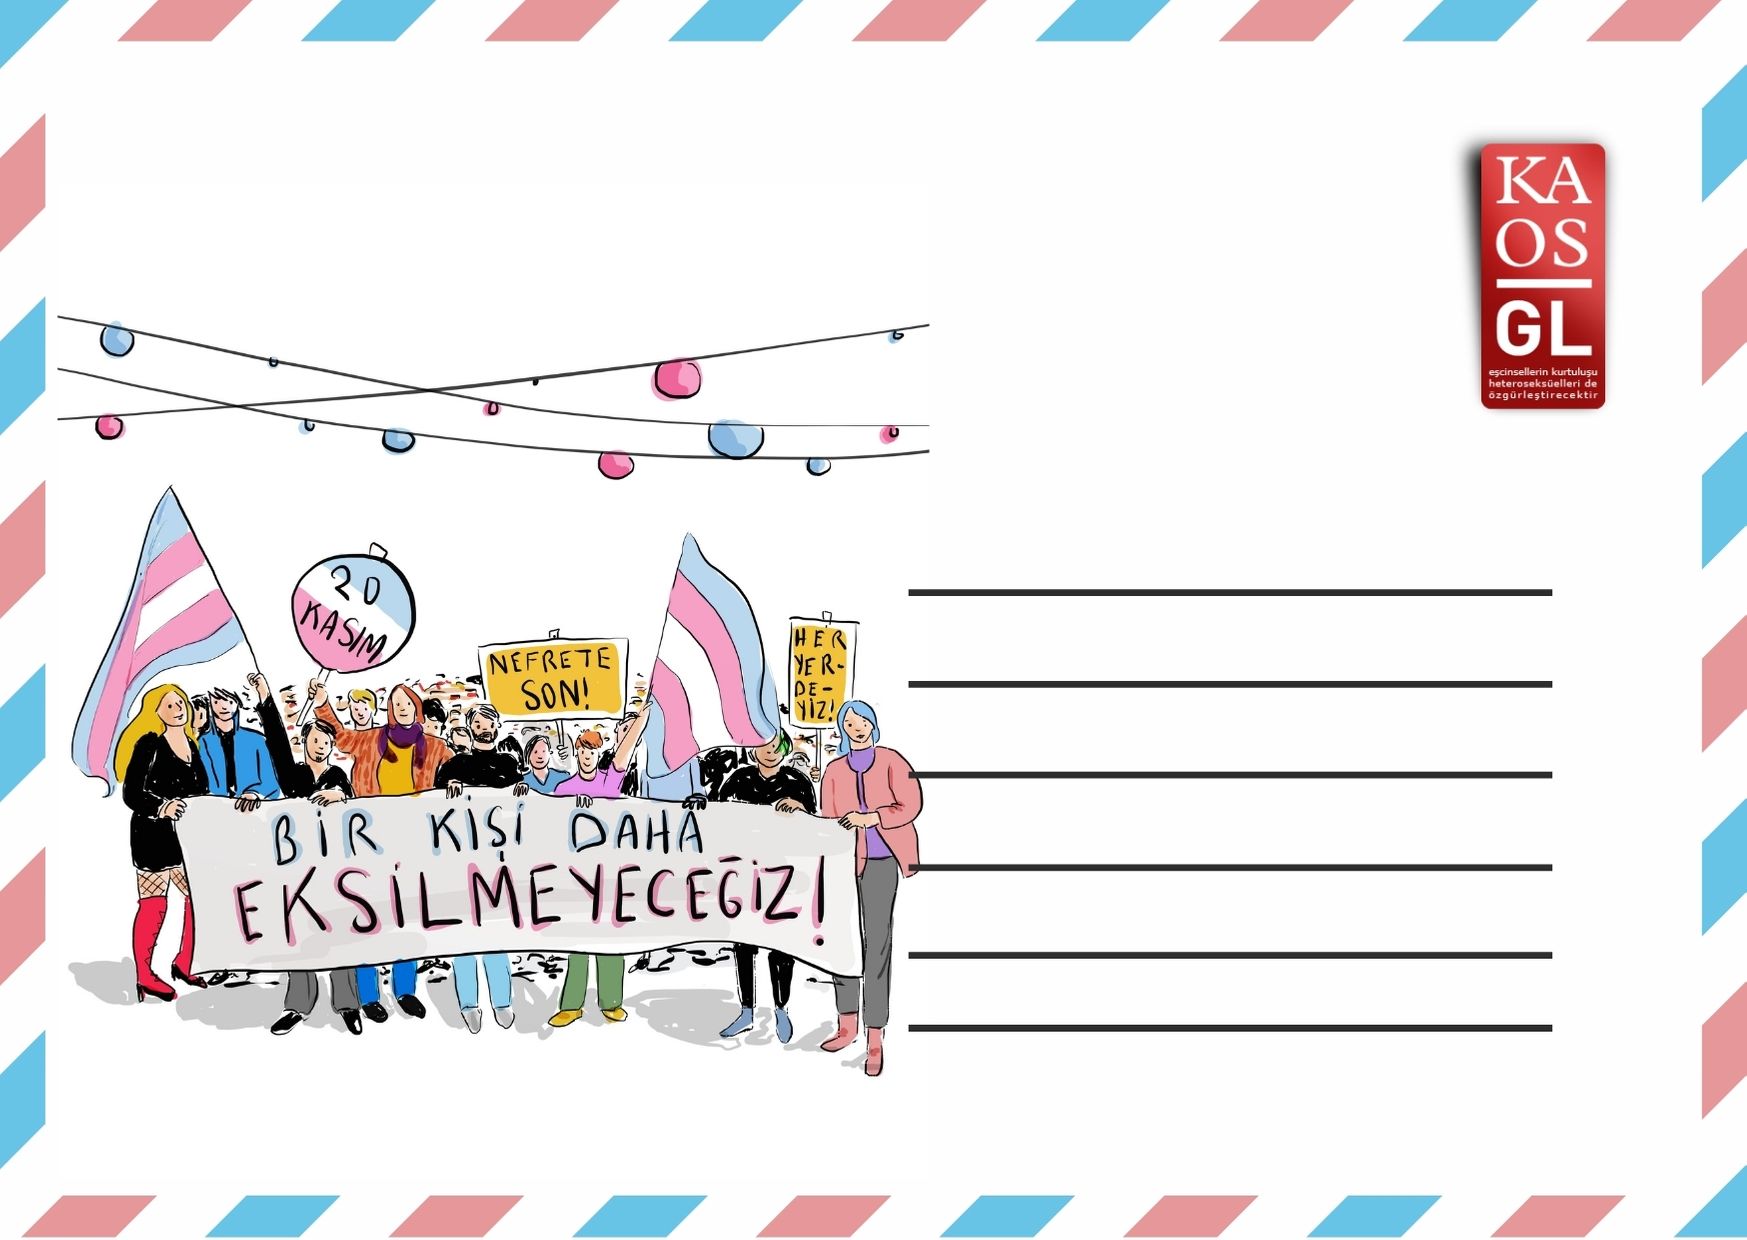 Kaos GL’den yeni yıl kartpostalları Kaos GL - LGBTİ+ Haber Portalı